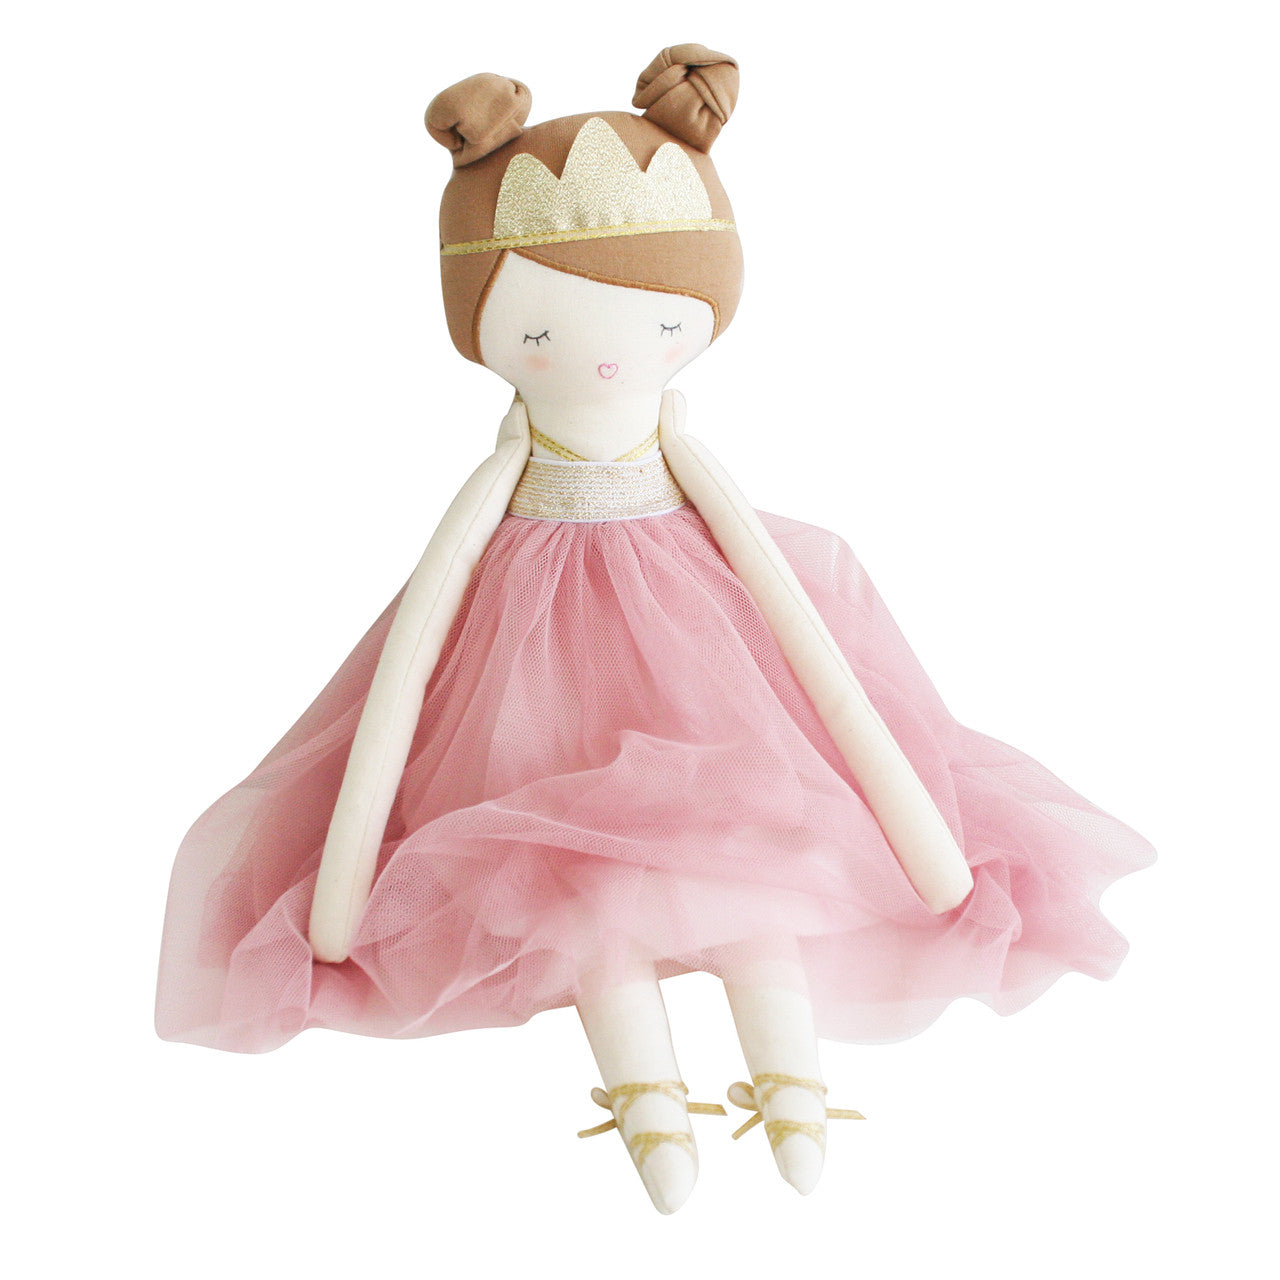 pandora princess doll blush pink dress with crown 50cm alimrose